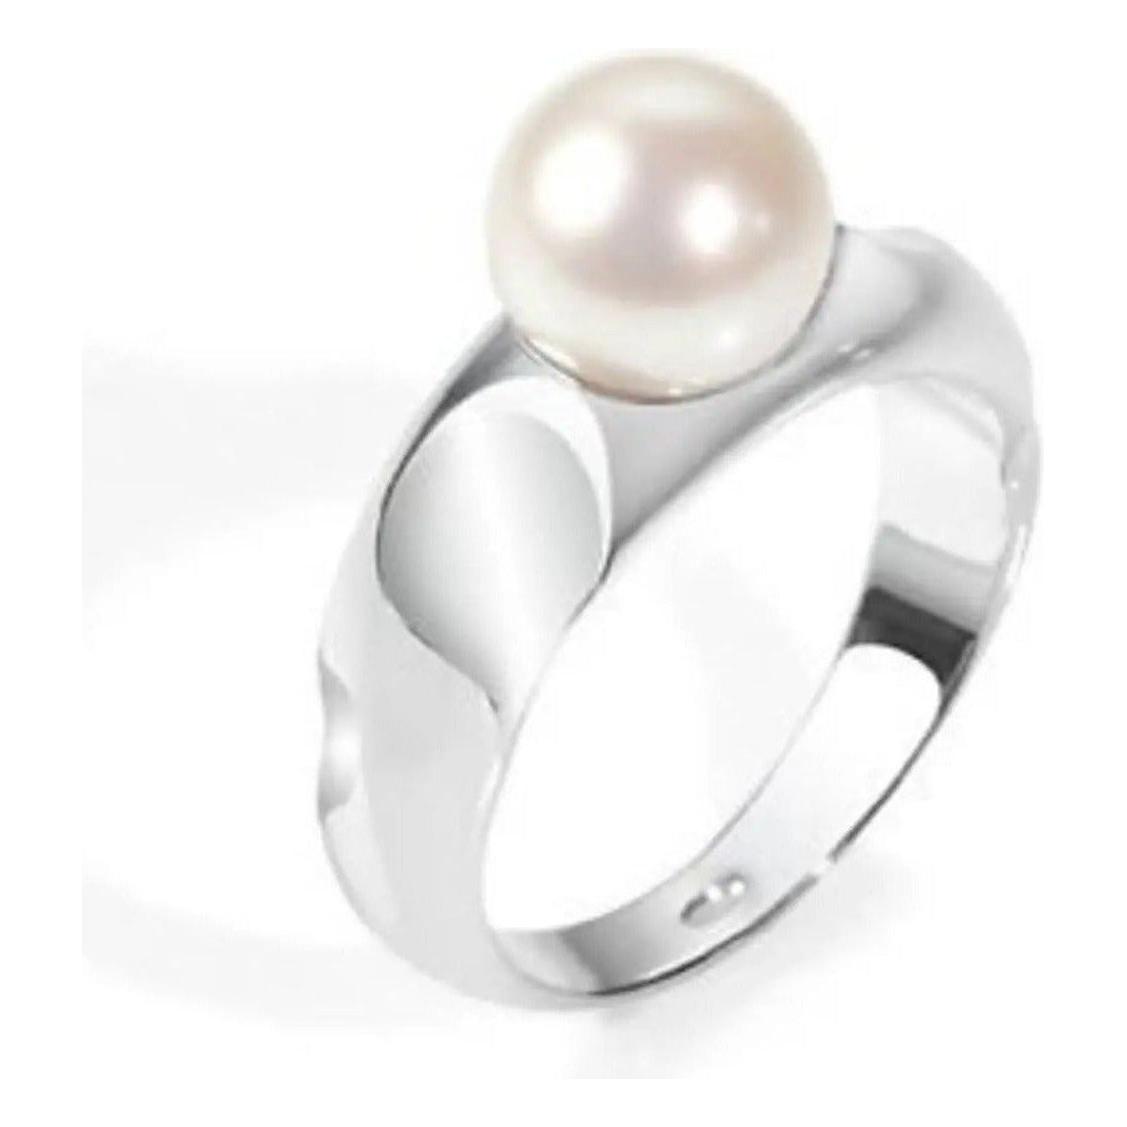 MORELLATO GIOIELLI MORELLATO Mod. PERLA size 016 Con Perle coltivate / Cultured Pearls Ring morellato-mod-perla-size-016-con-perle-coltivate-cultured-pearls